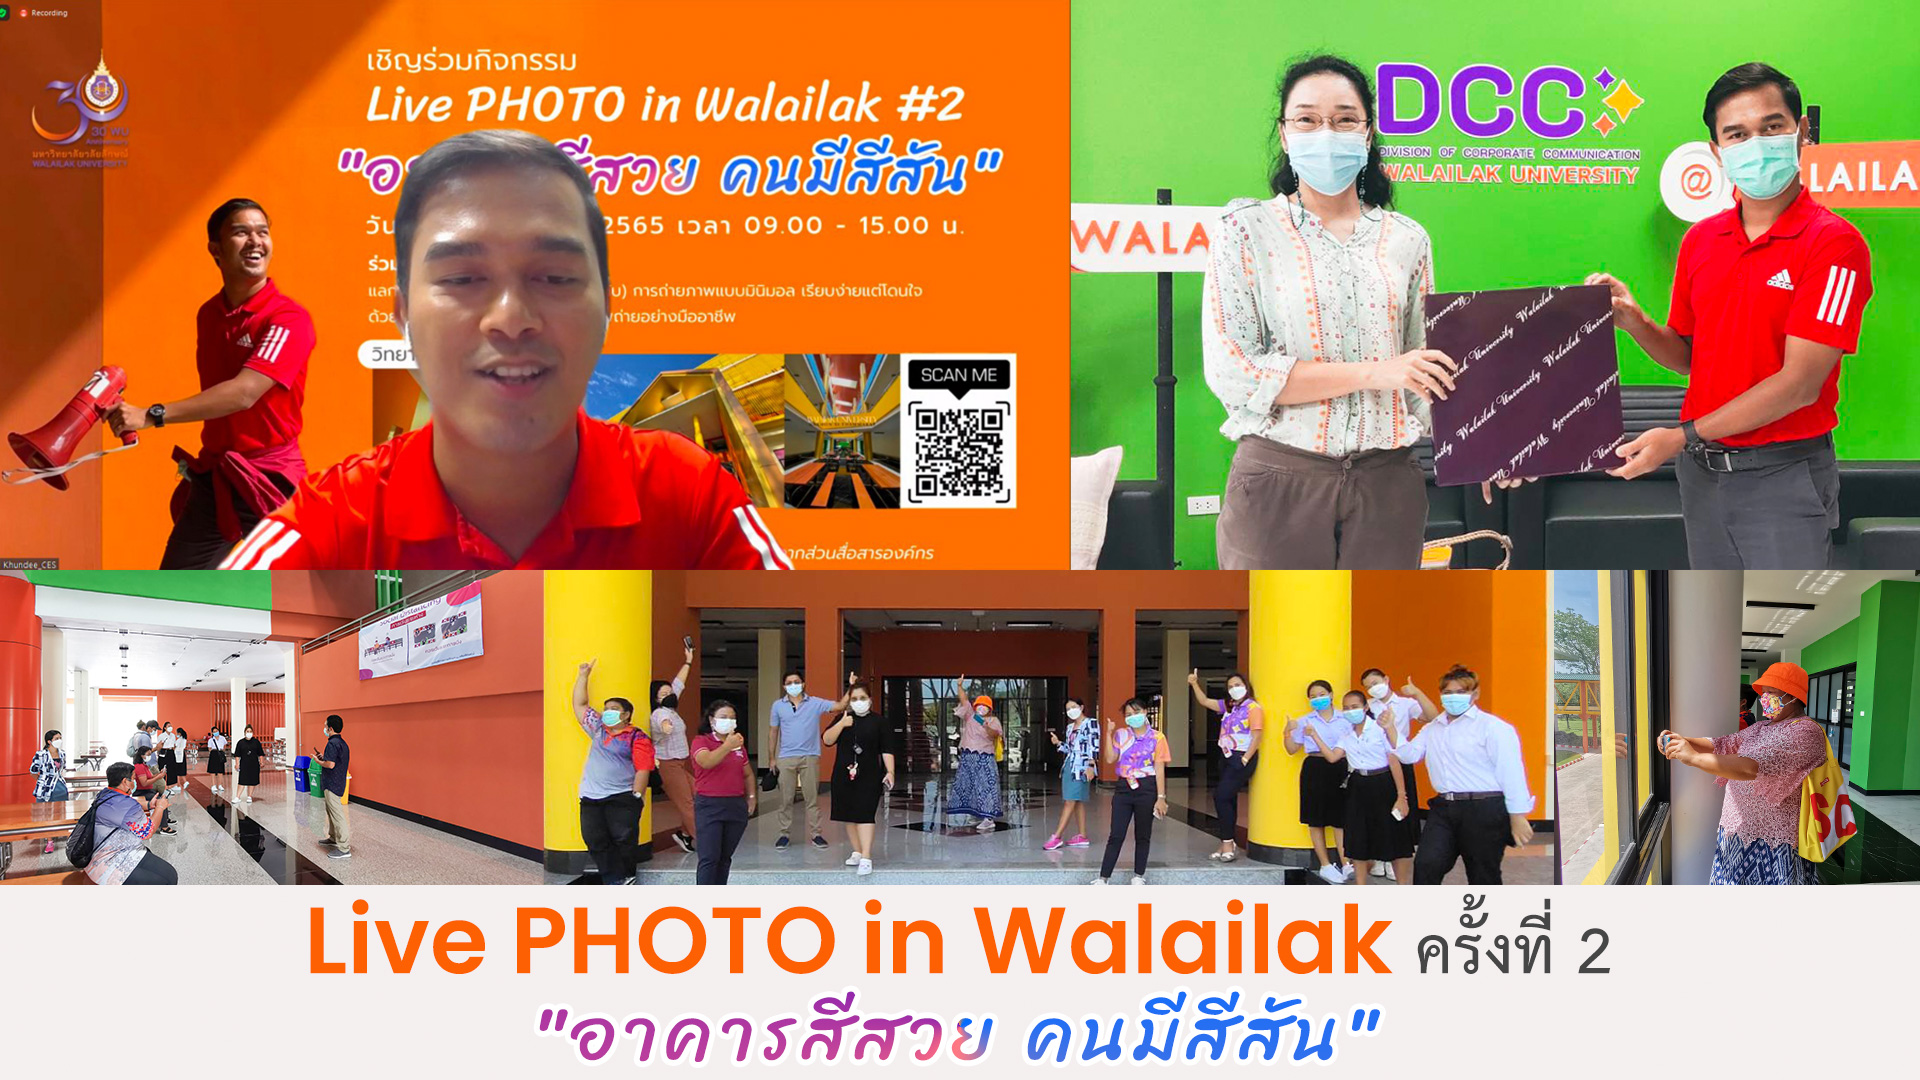 กิจกรรม Live PHOTO in Walailak ครั้งที่ 2 